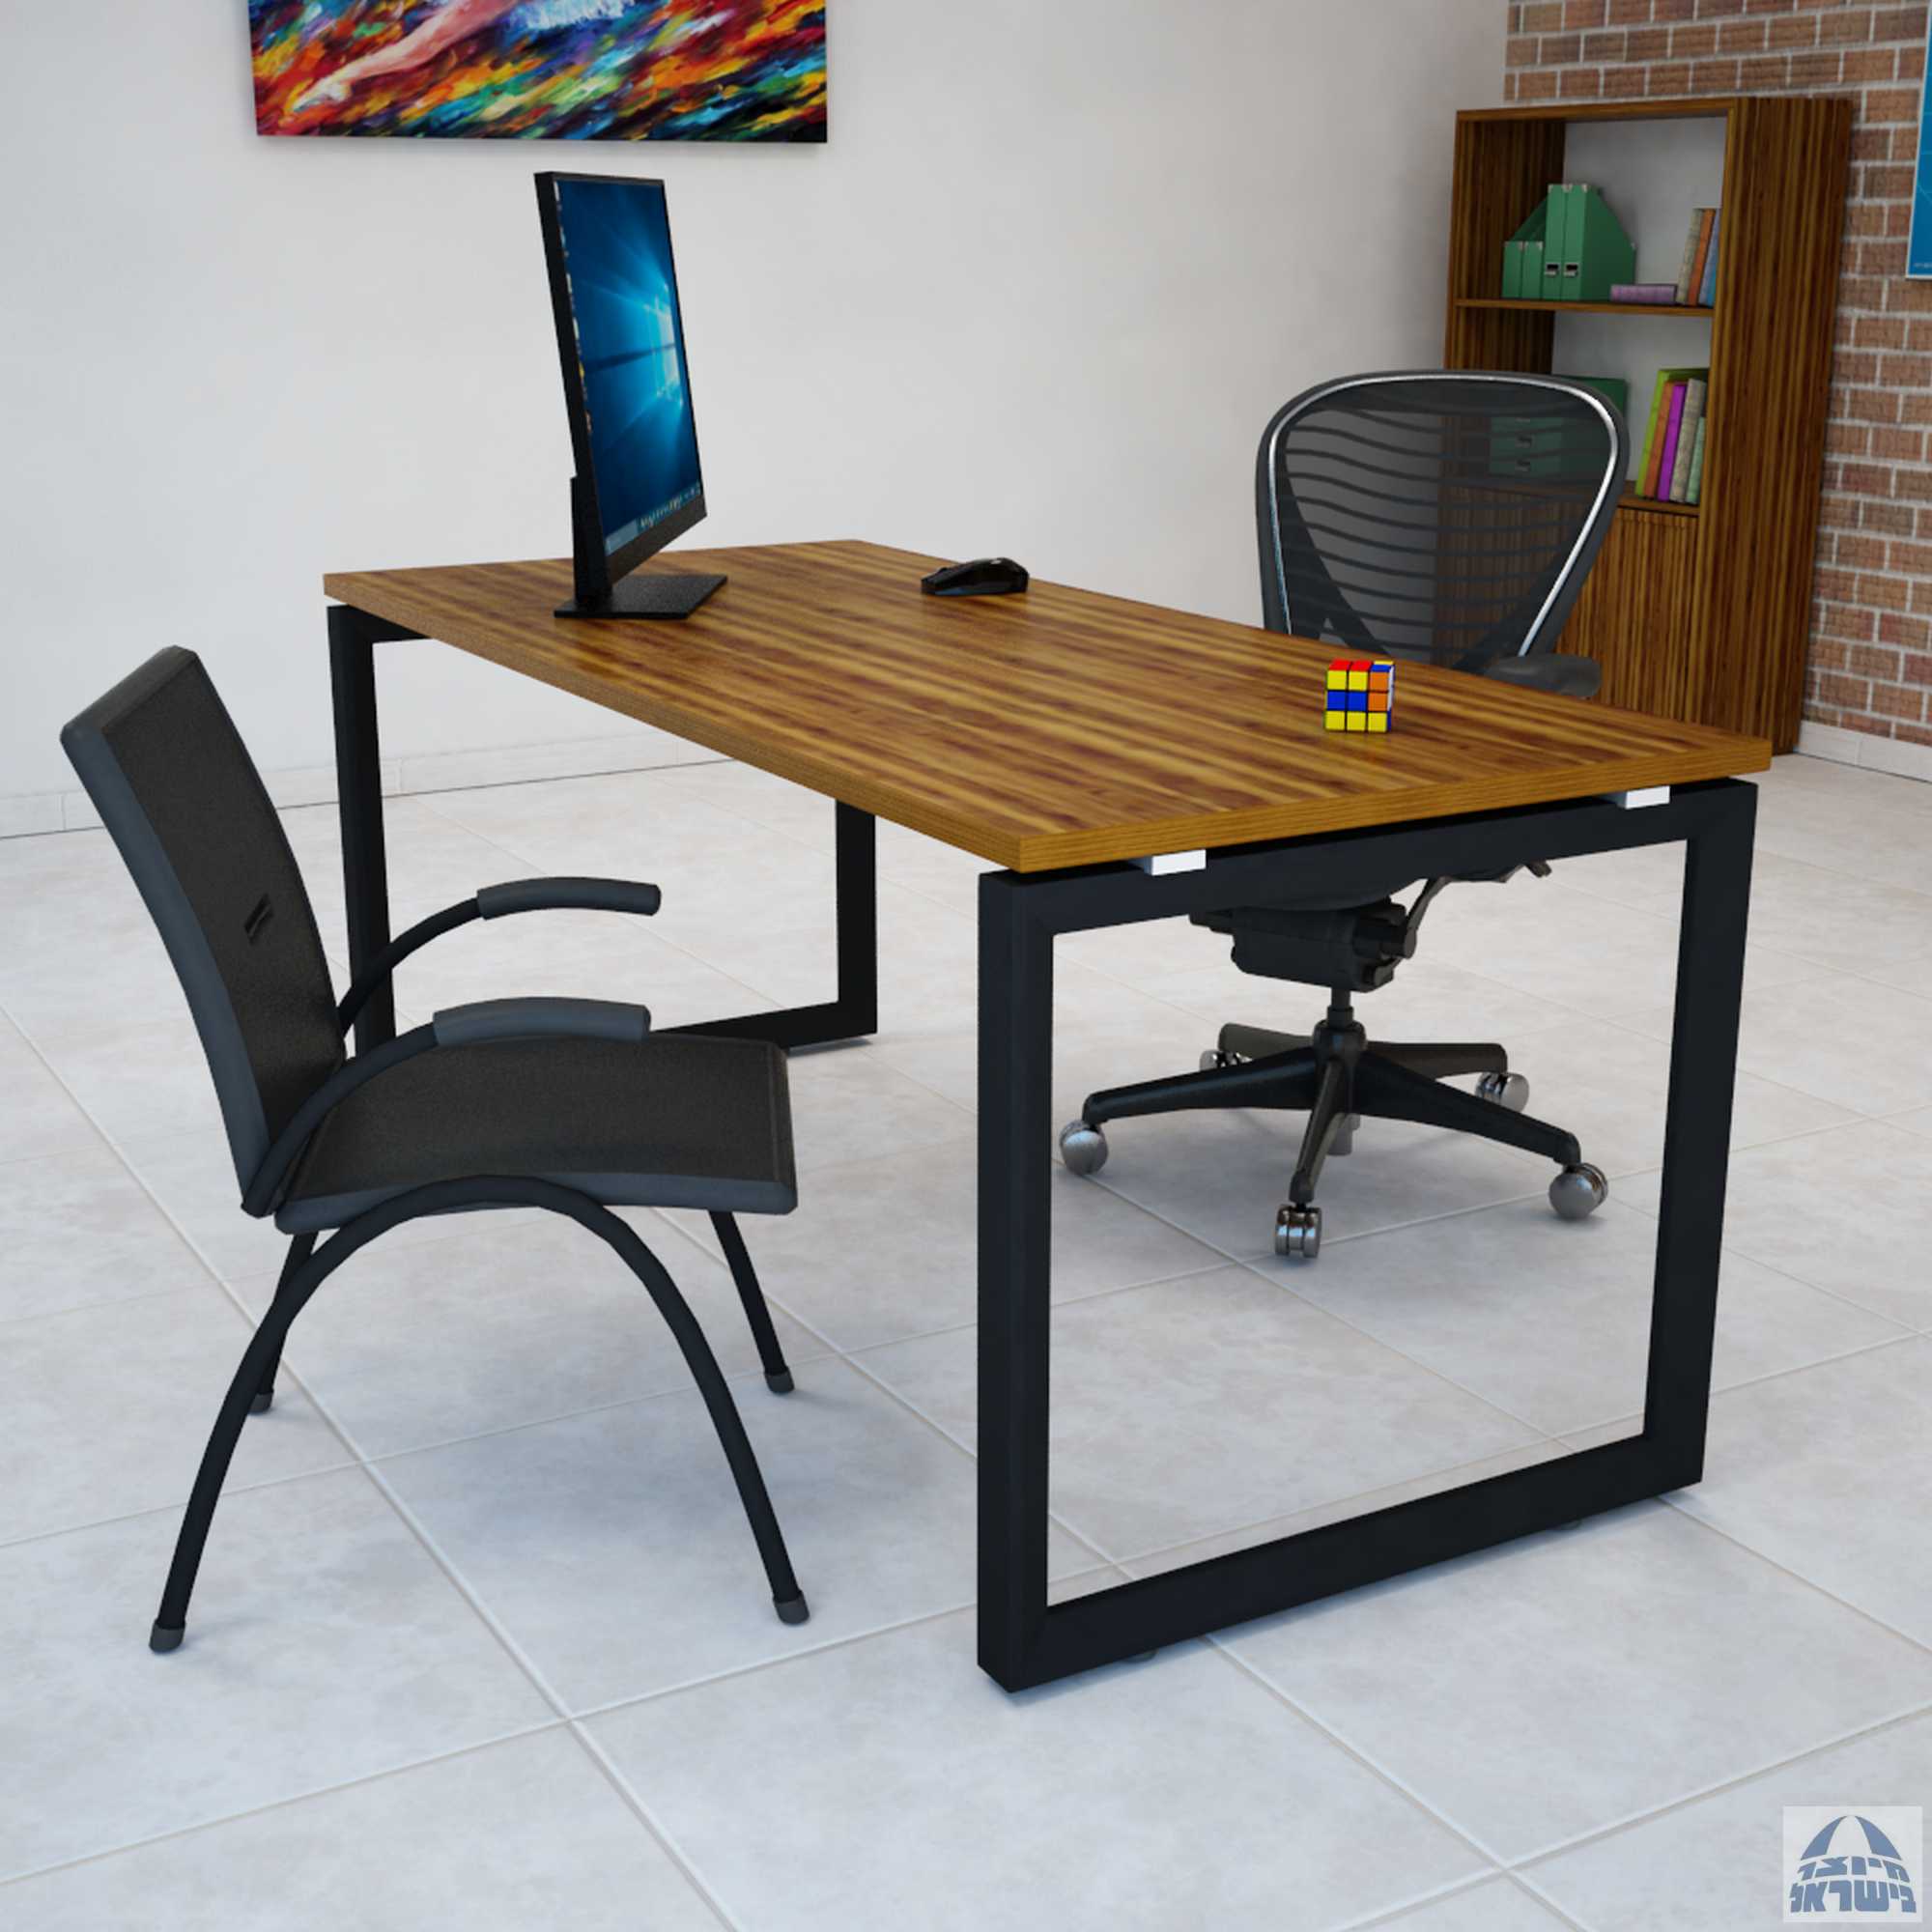 שולחן כתיבה משרדי דגם Diamond ללא מיסתור  רגל שחורה